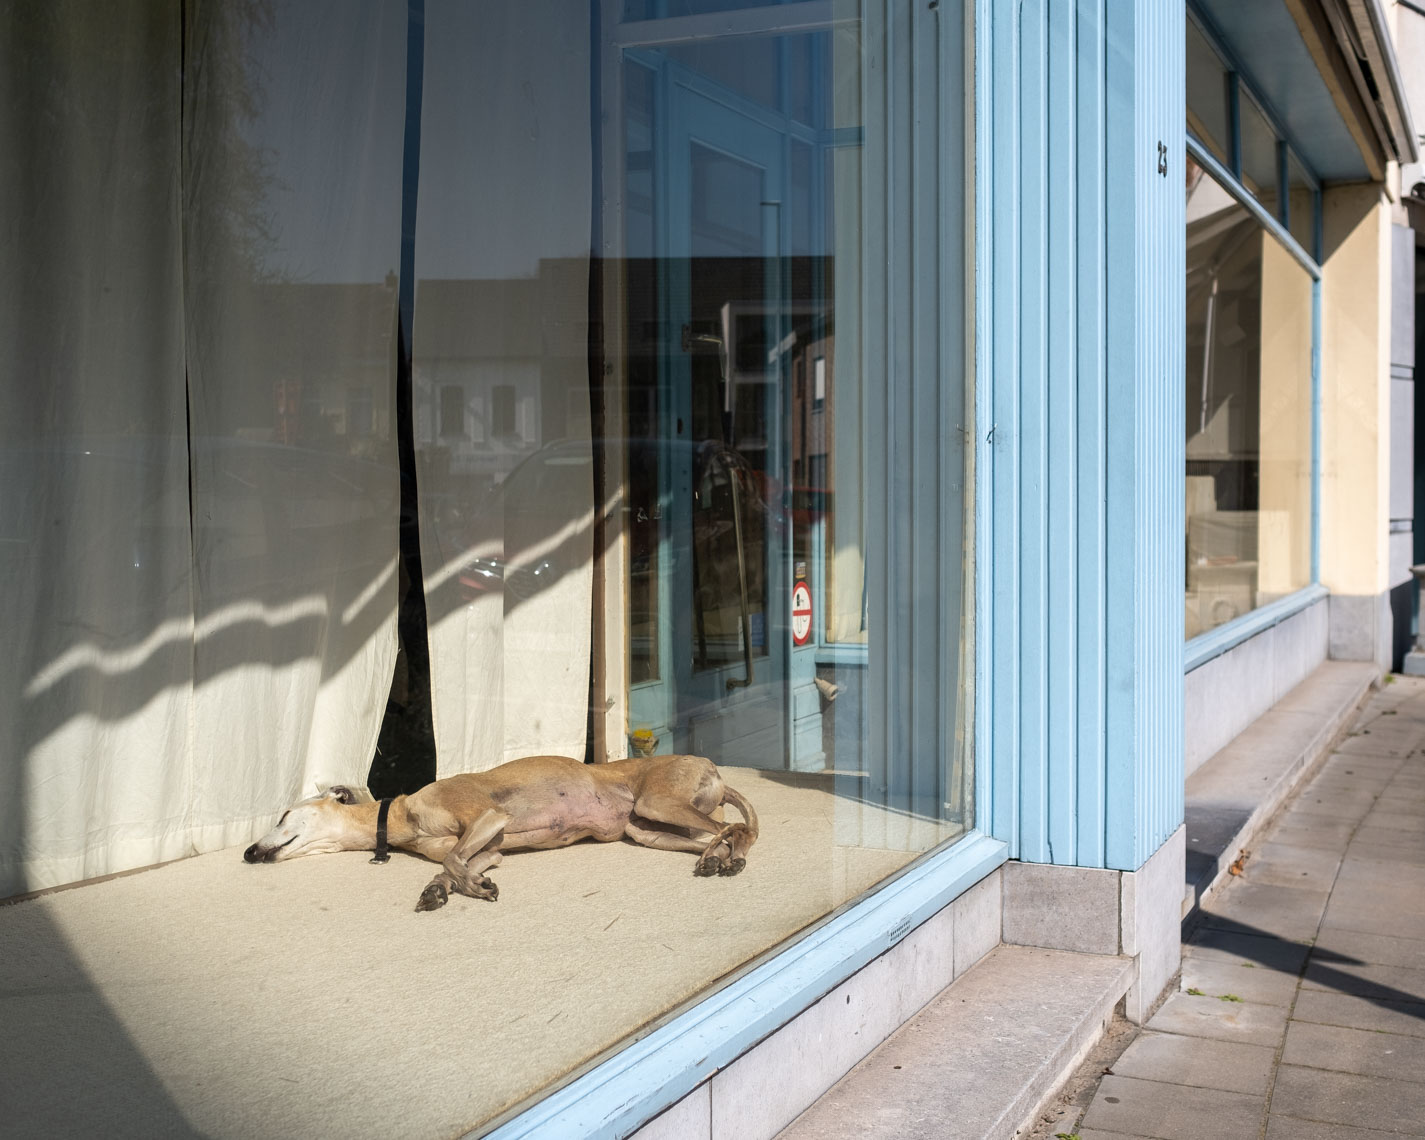 Hond in een vitrine tijdens de coronacrisis in Onze-Lieve-Vrouw-Waver